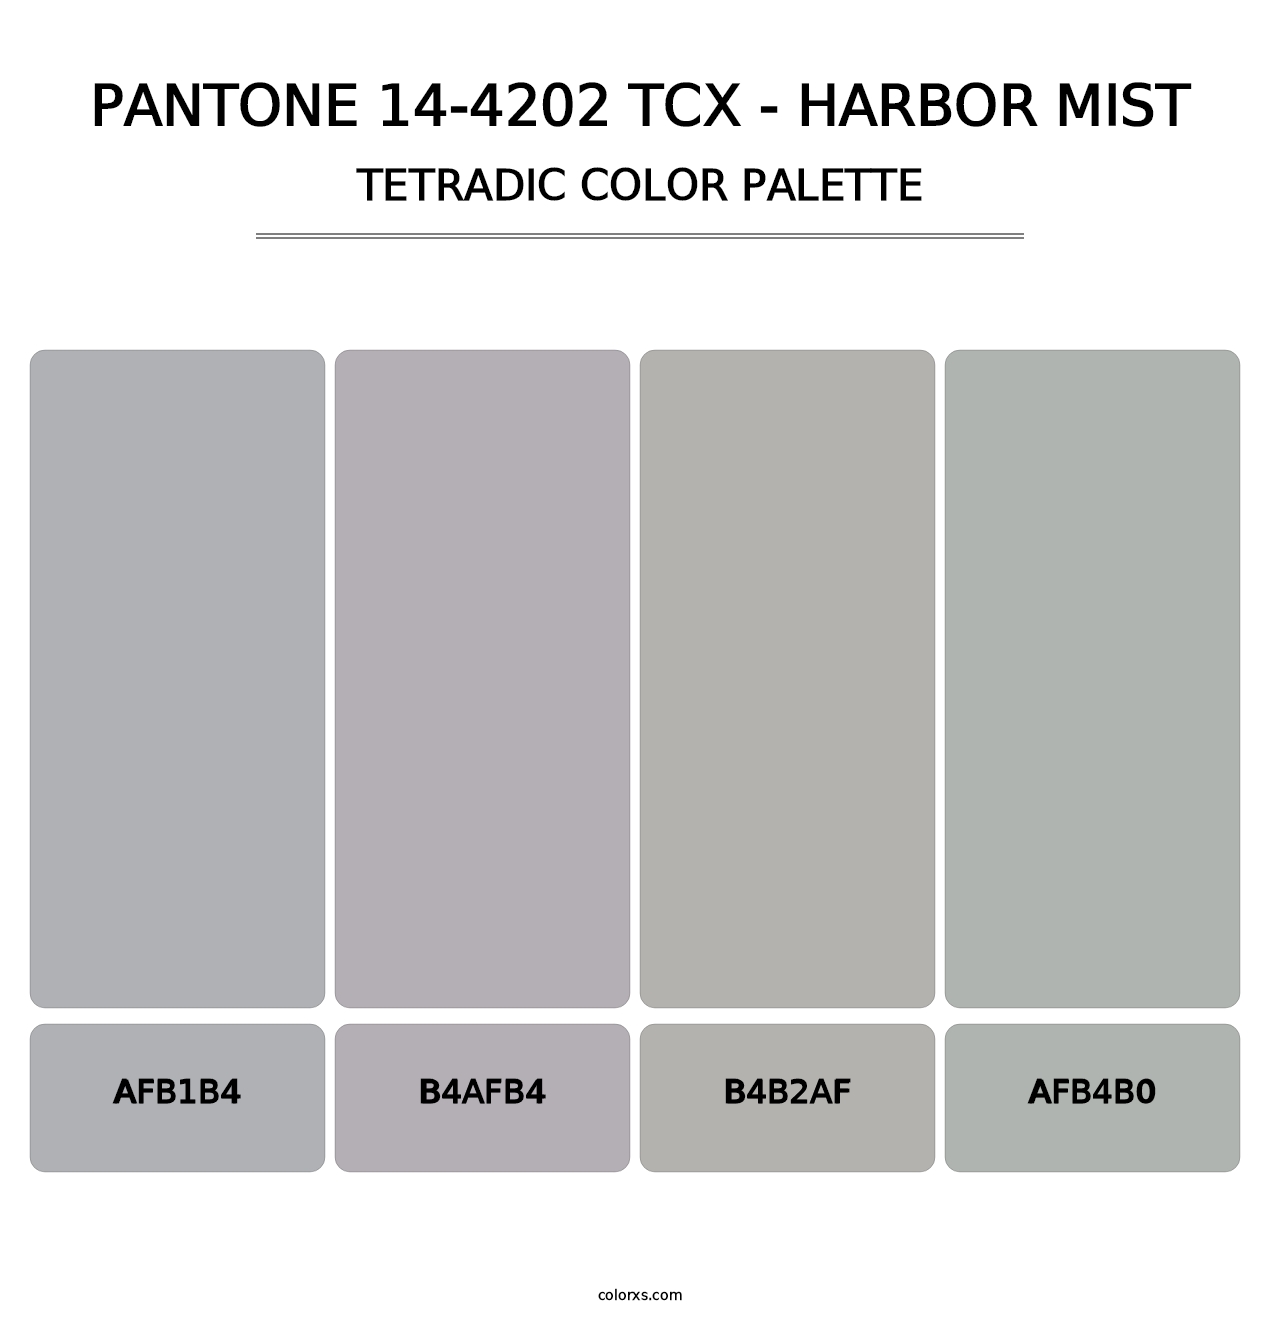 PANTONE 14-4202 TCX - Harbor Mist - Tetradic Color Palette